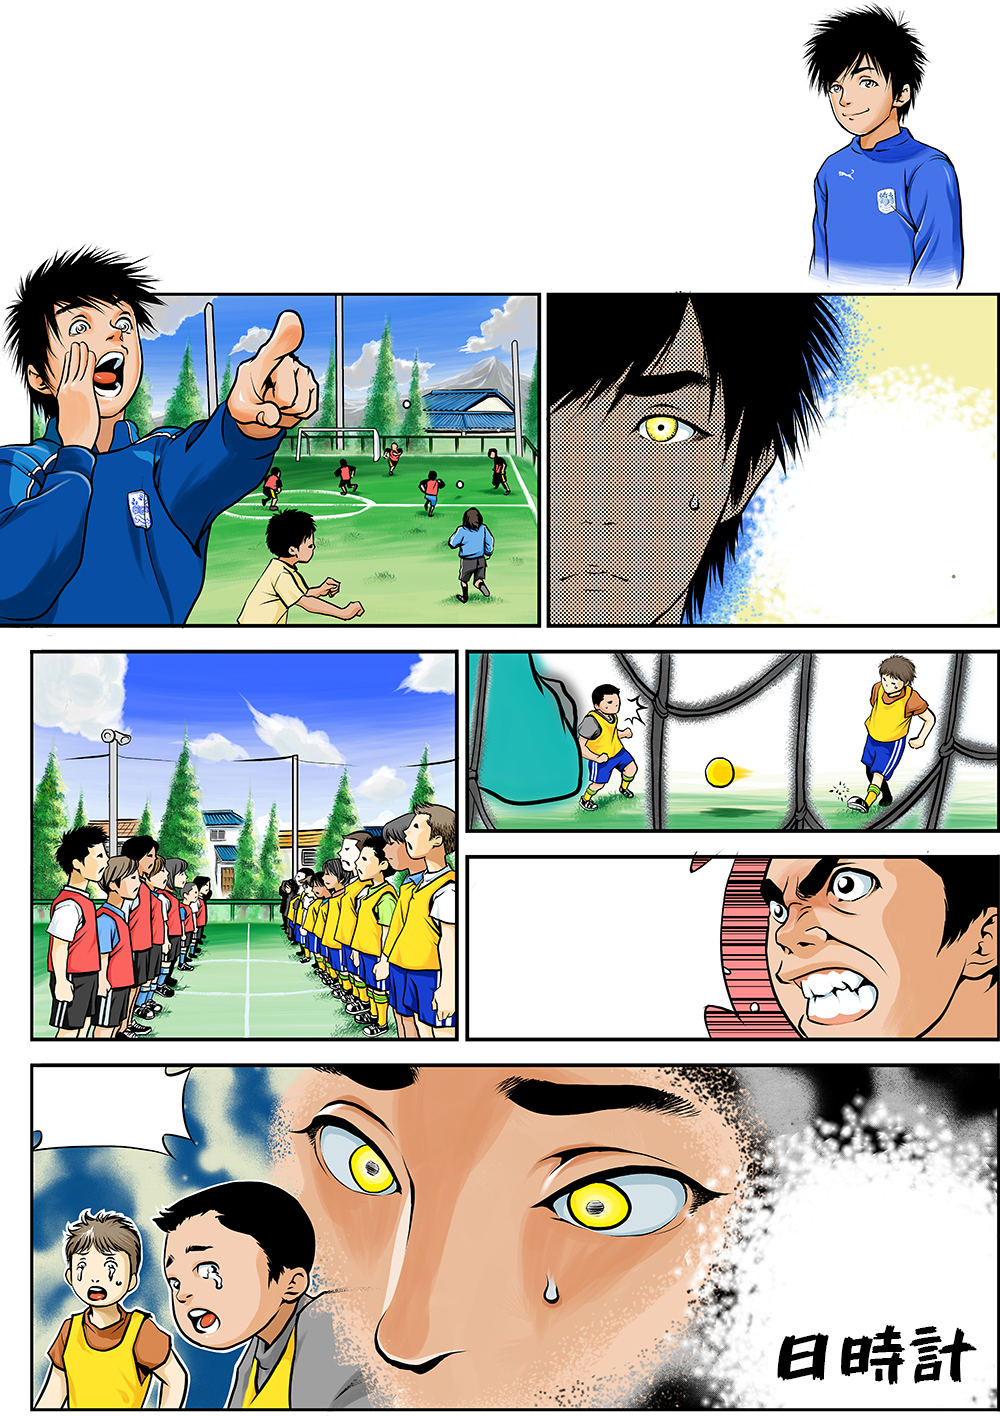 サッカー練習メニュー共有サイトシェアトレの漫画